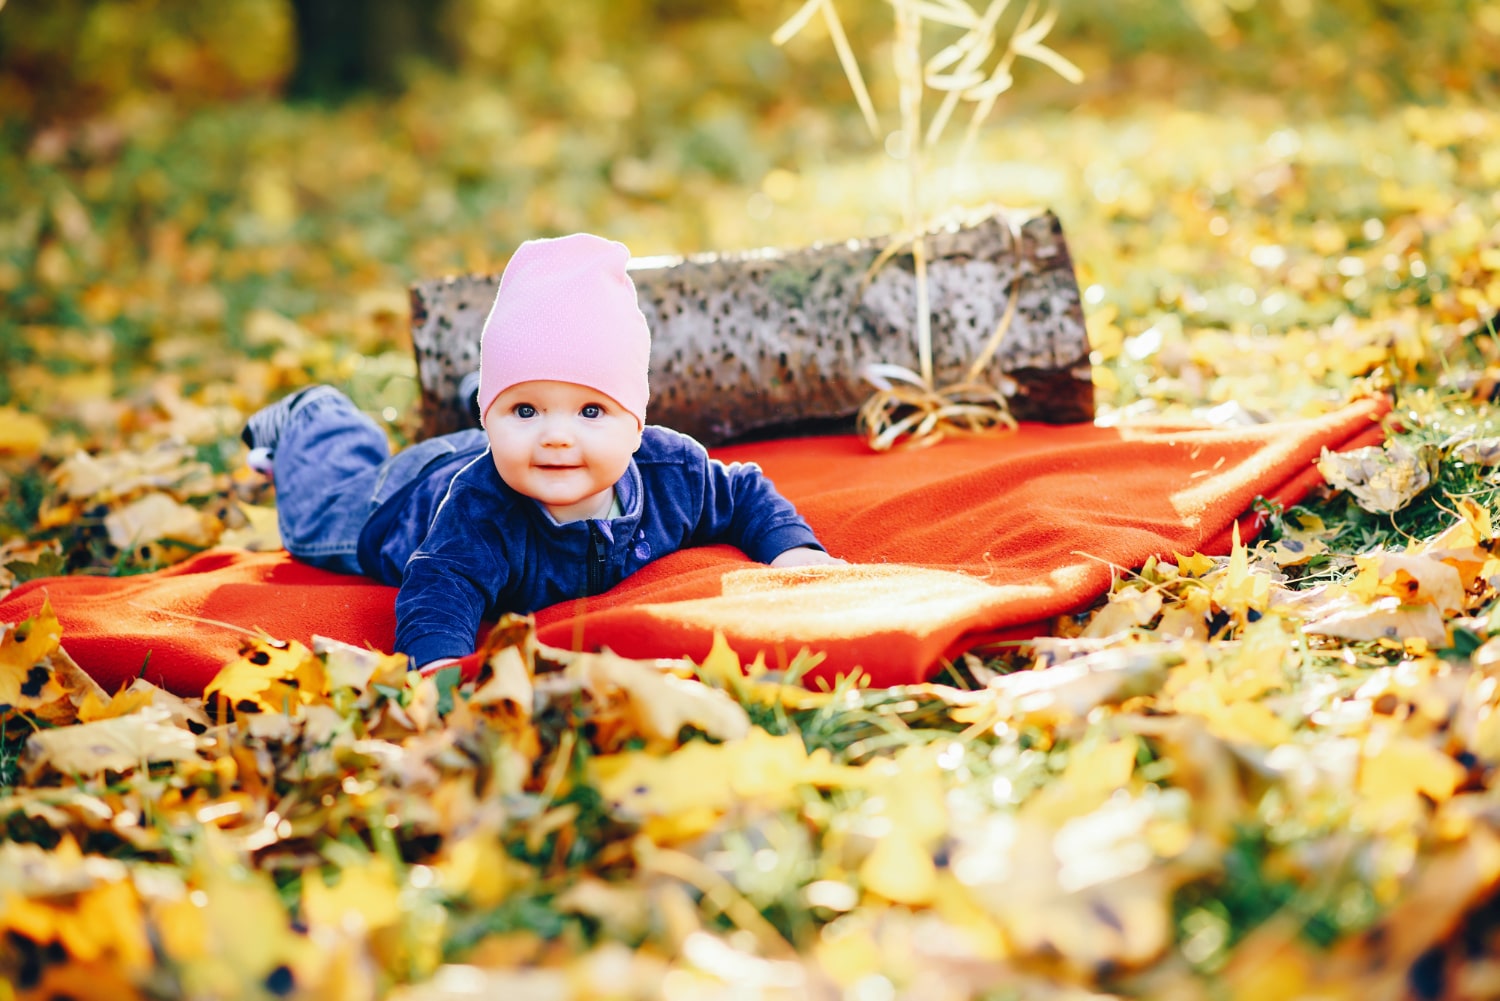 Nature-inspired newborn baby photoshoot